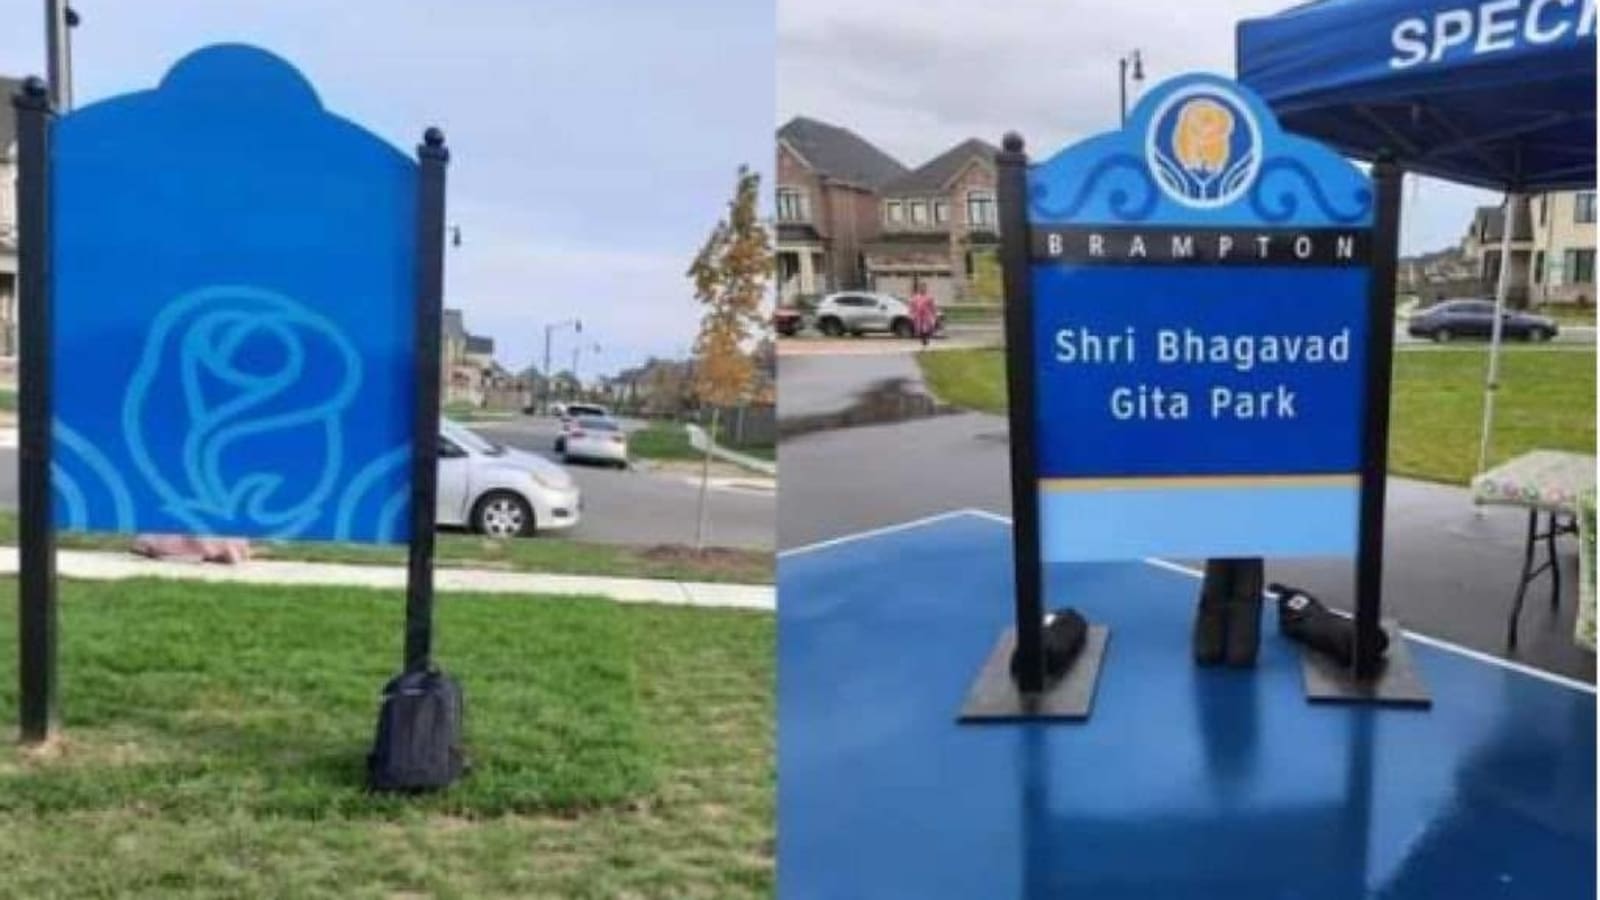 No vandalism at Bhagavad Gita Park, says Canada, after India's ...